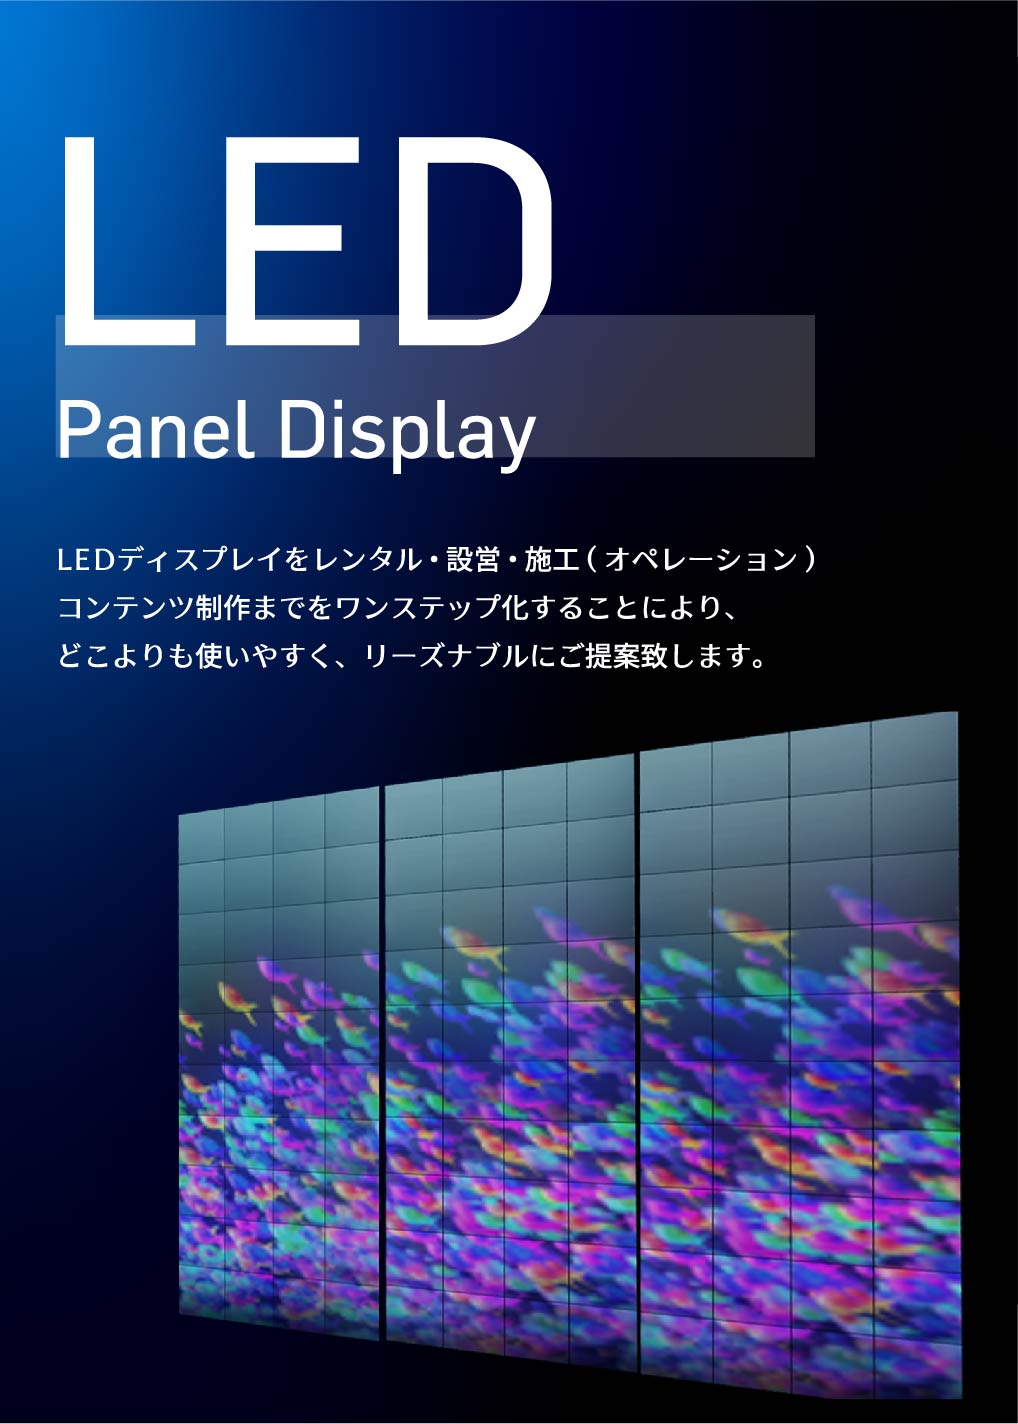 LED Panel Display LEDディスプレイをレンタル・設営・施工(オペレーション)コンテンツ制作までをワンステップ化することにより、どこよりも使いやすく、リーズナブルにご提案致します。